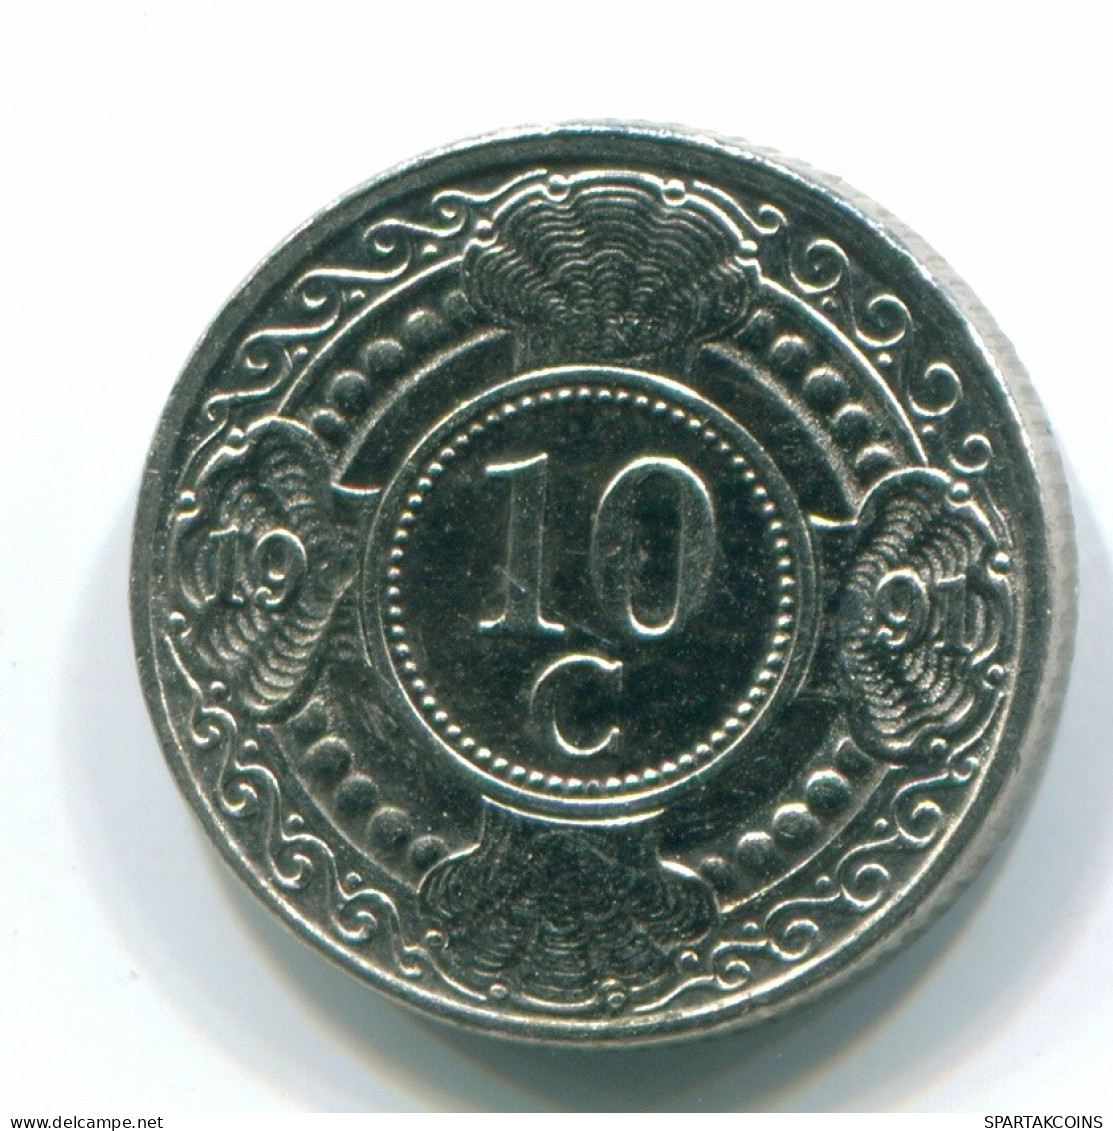 10 CENTS 1991 NIEDERLÄNDISCHE ANTILLEN Nickel Koloniale Münze #S11325.D.A - Niederländische Antillen